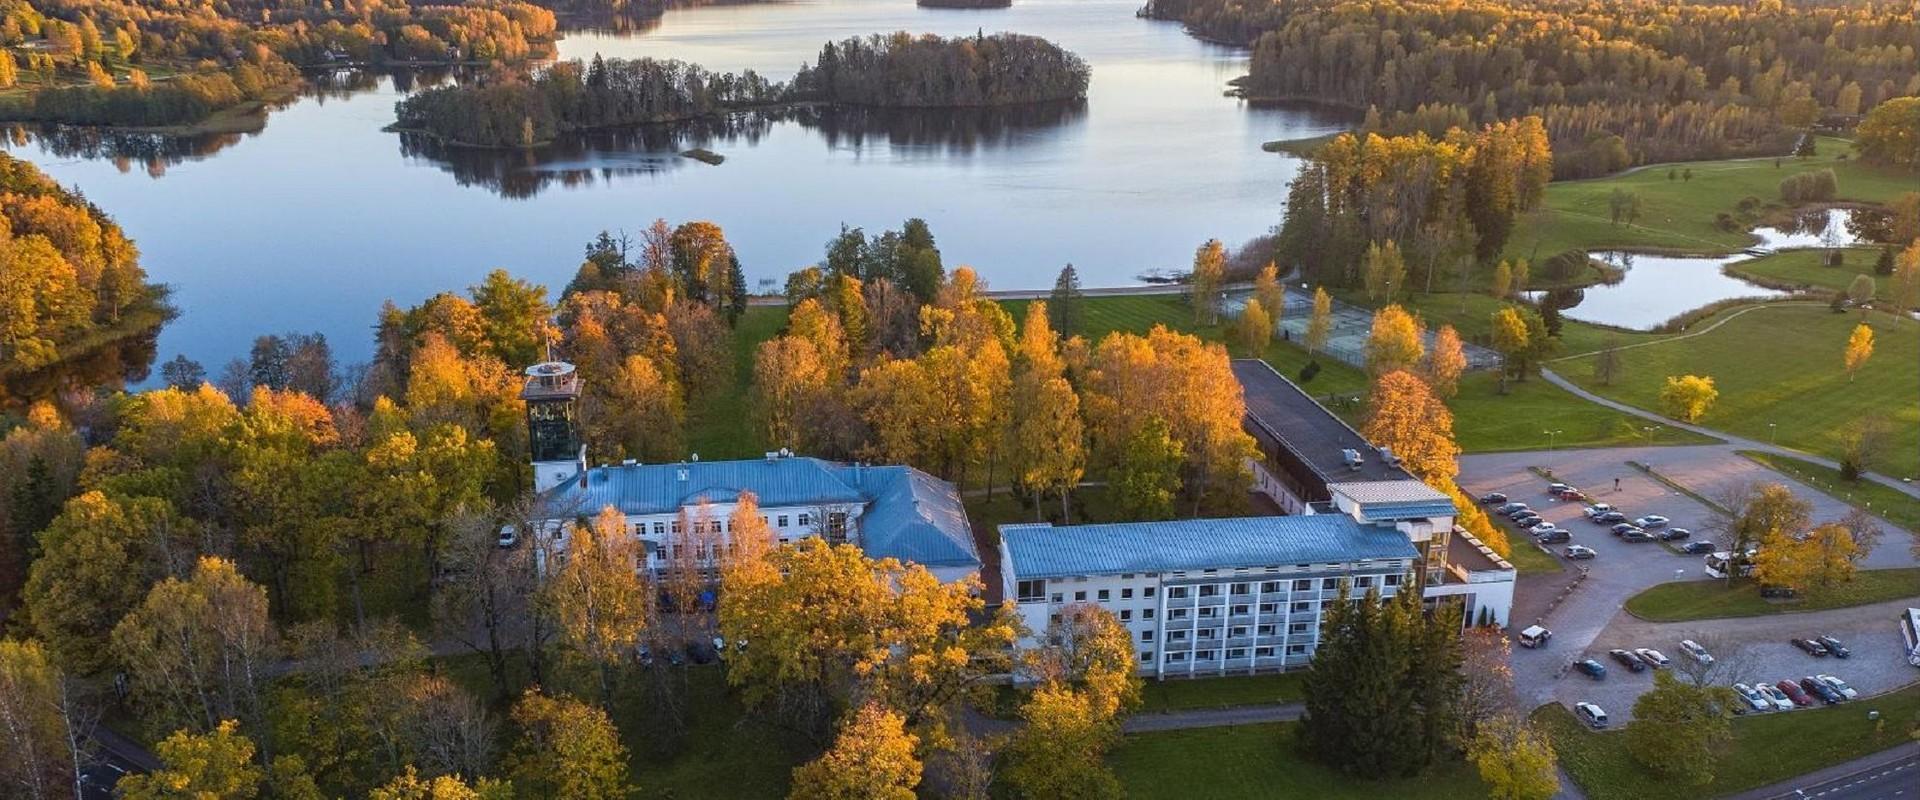 Eesti kauneima järve kaldal paiknev Pühajärve Spa & Puhkekeskus on juba aastaid üks Eesti armastatumaid puhkepaiku. Mõisapargi südames asuv spaa pakub